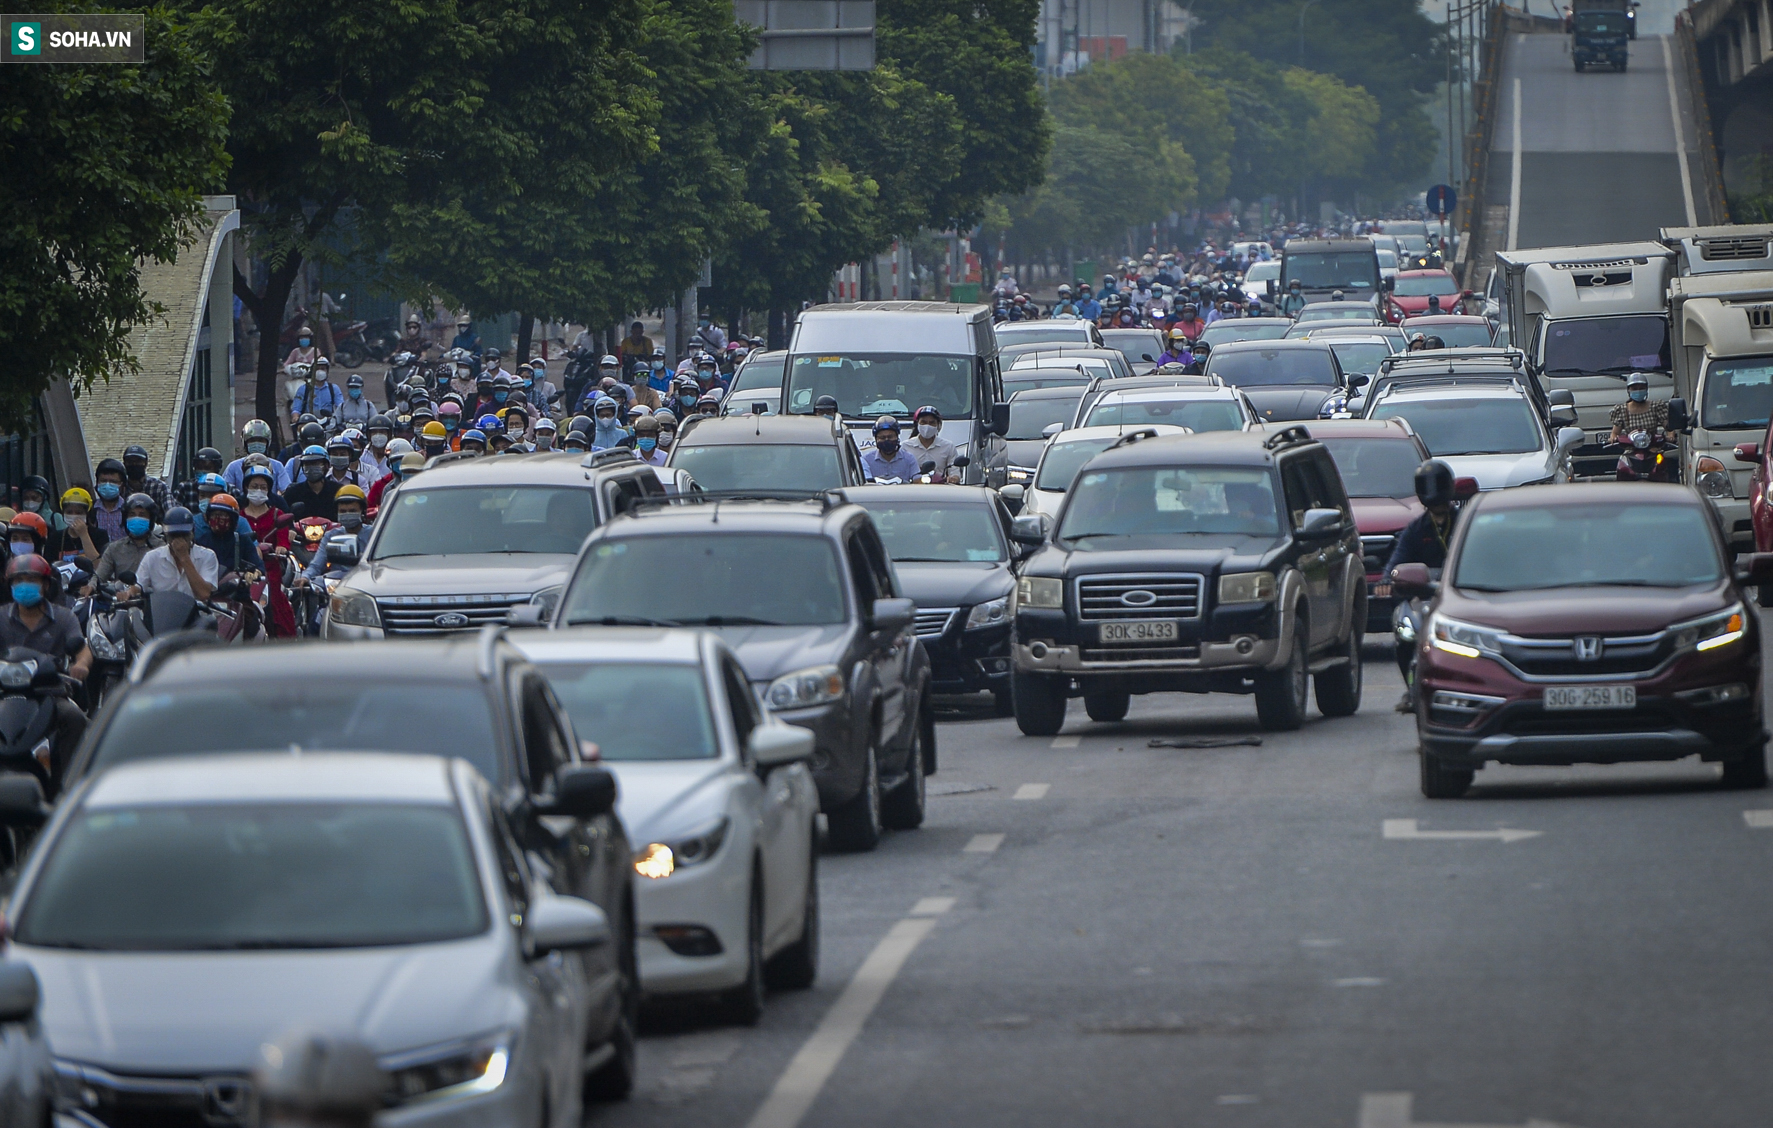 Ngày cuối giãn cách xã hội đợt 4, nhiều tuyến phố Hà Nội xe cộ tấp nập - Ảnh 8.